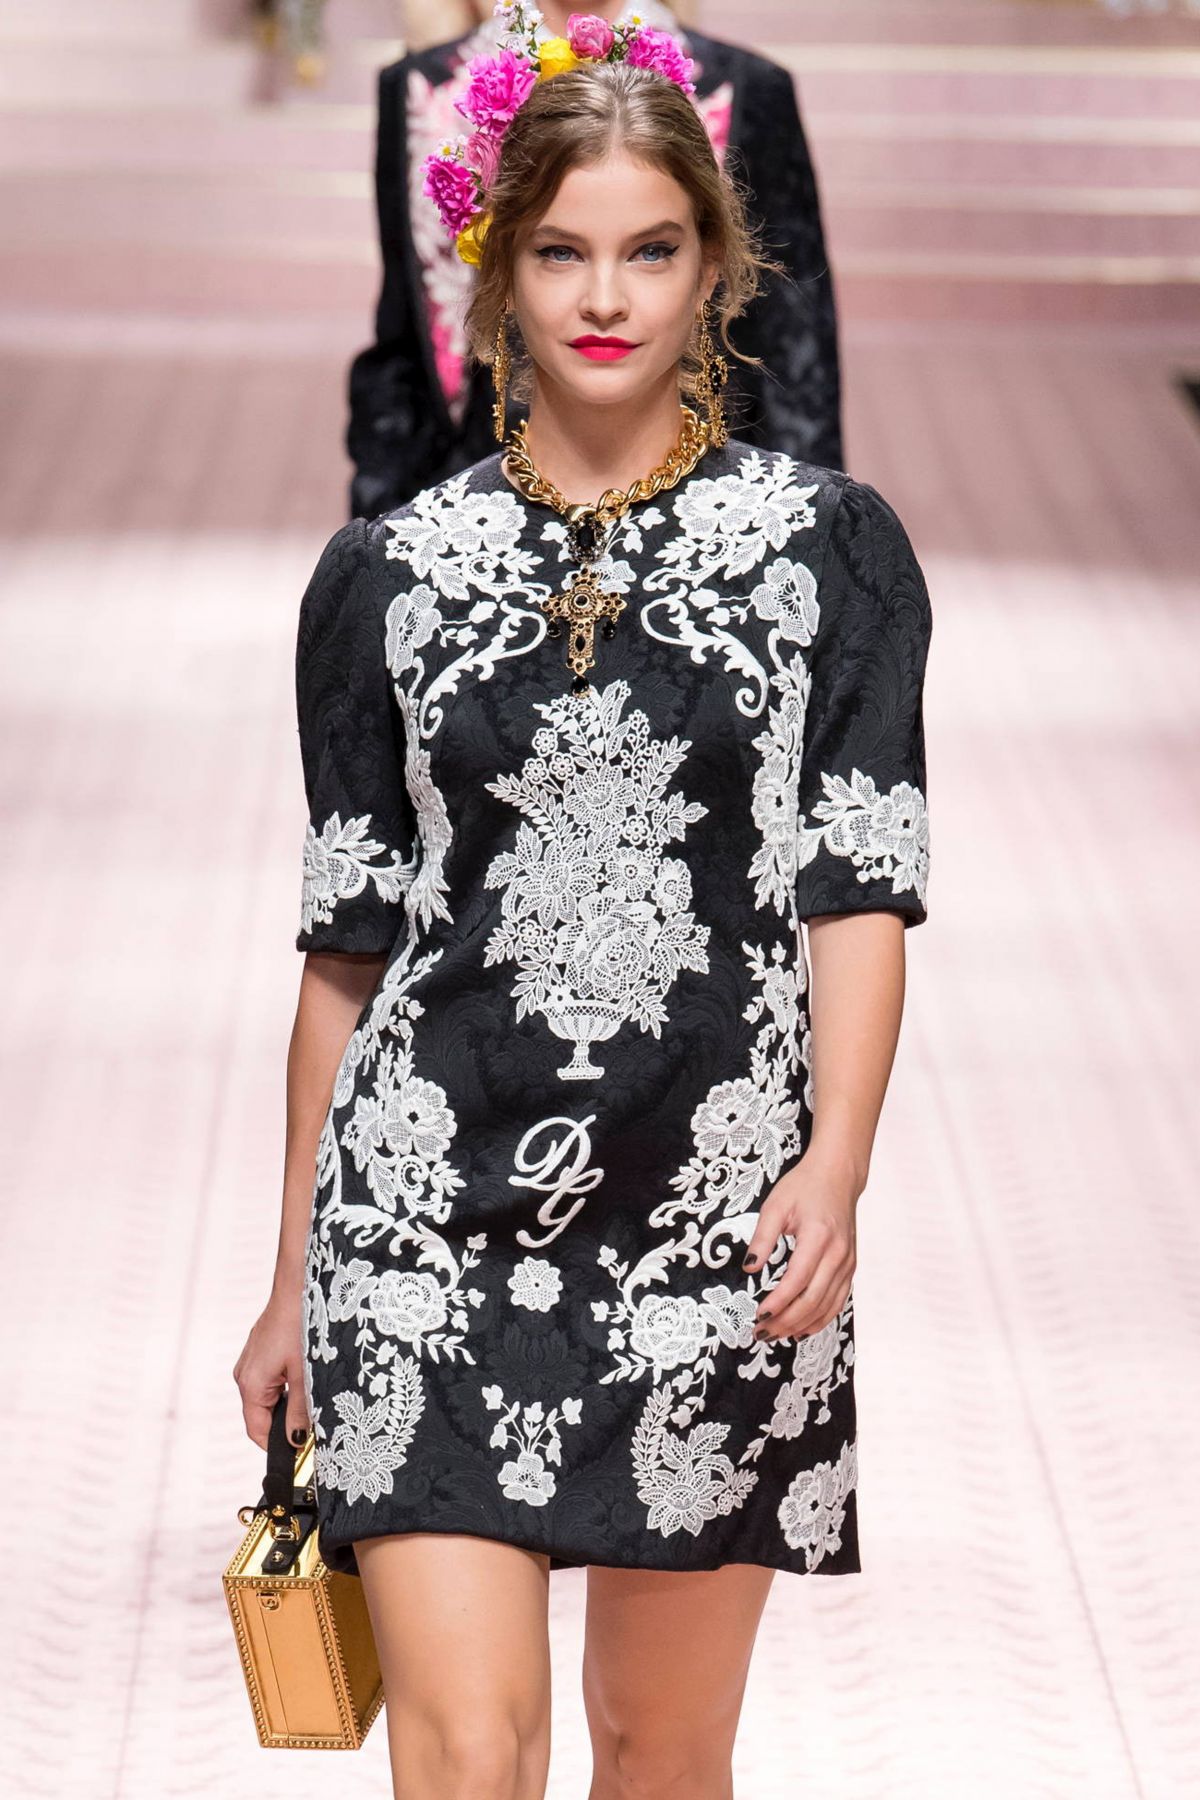 BARBARA PALVIN at Dolce & Gabbana Runway Show at Milan Fashion Week 09